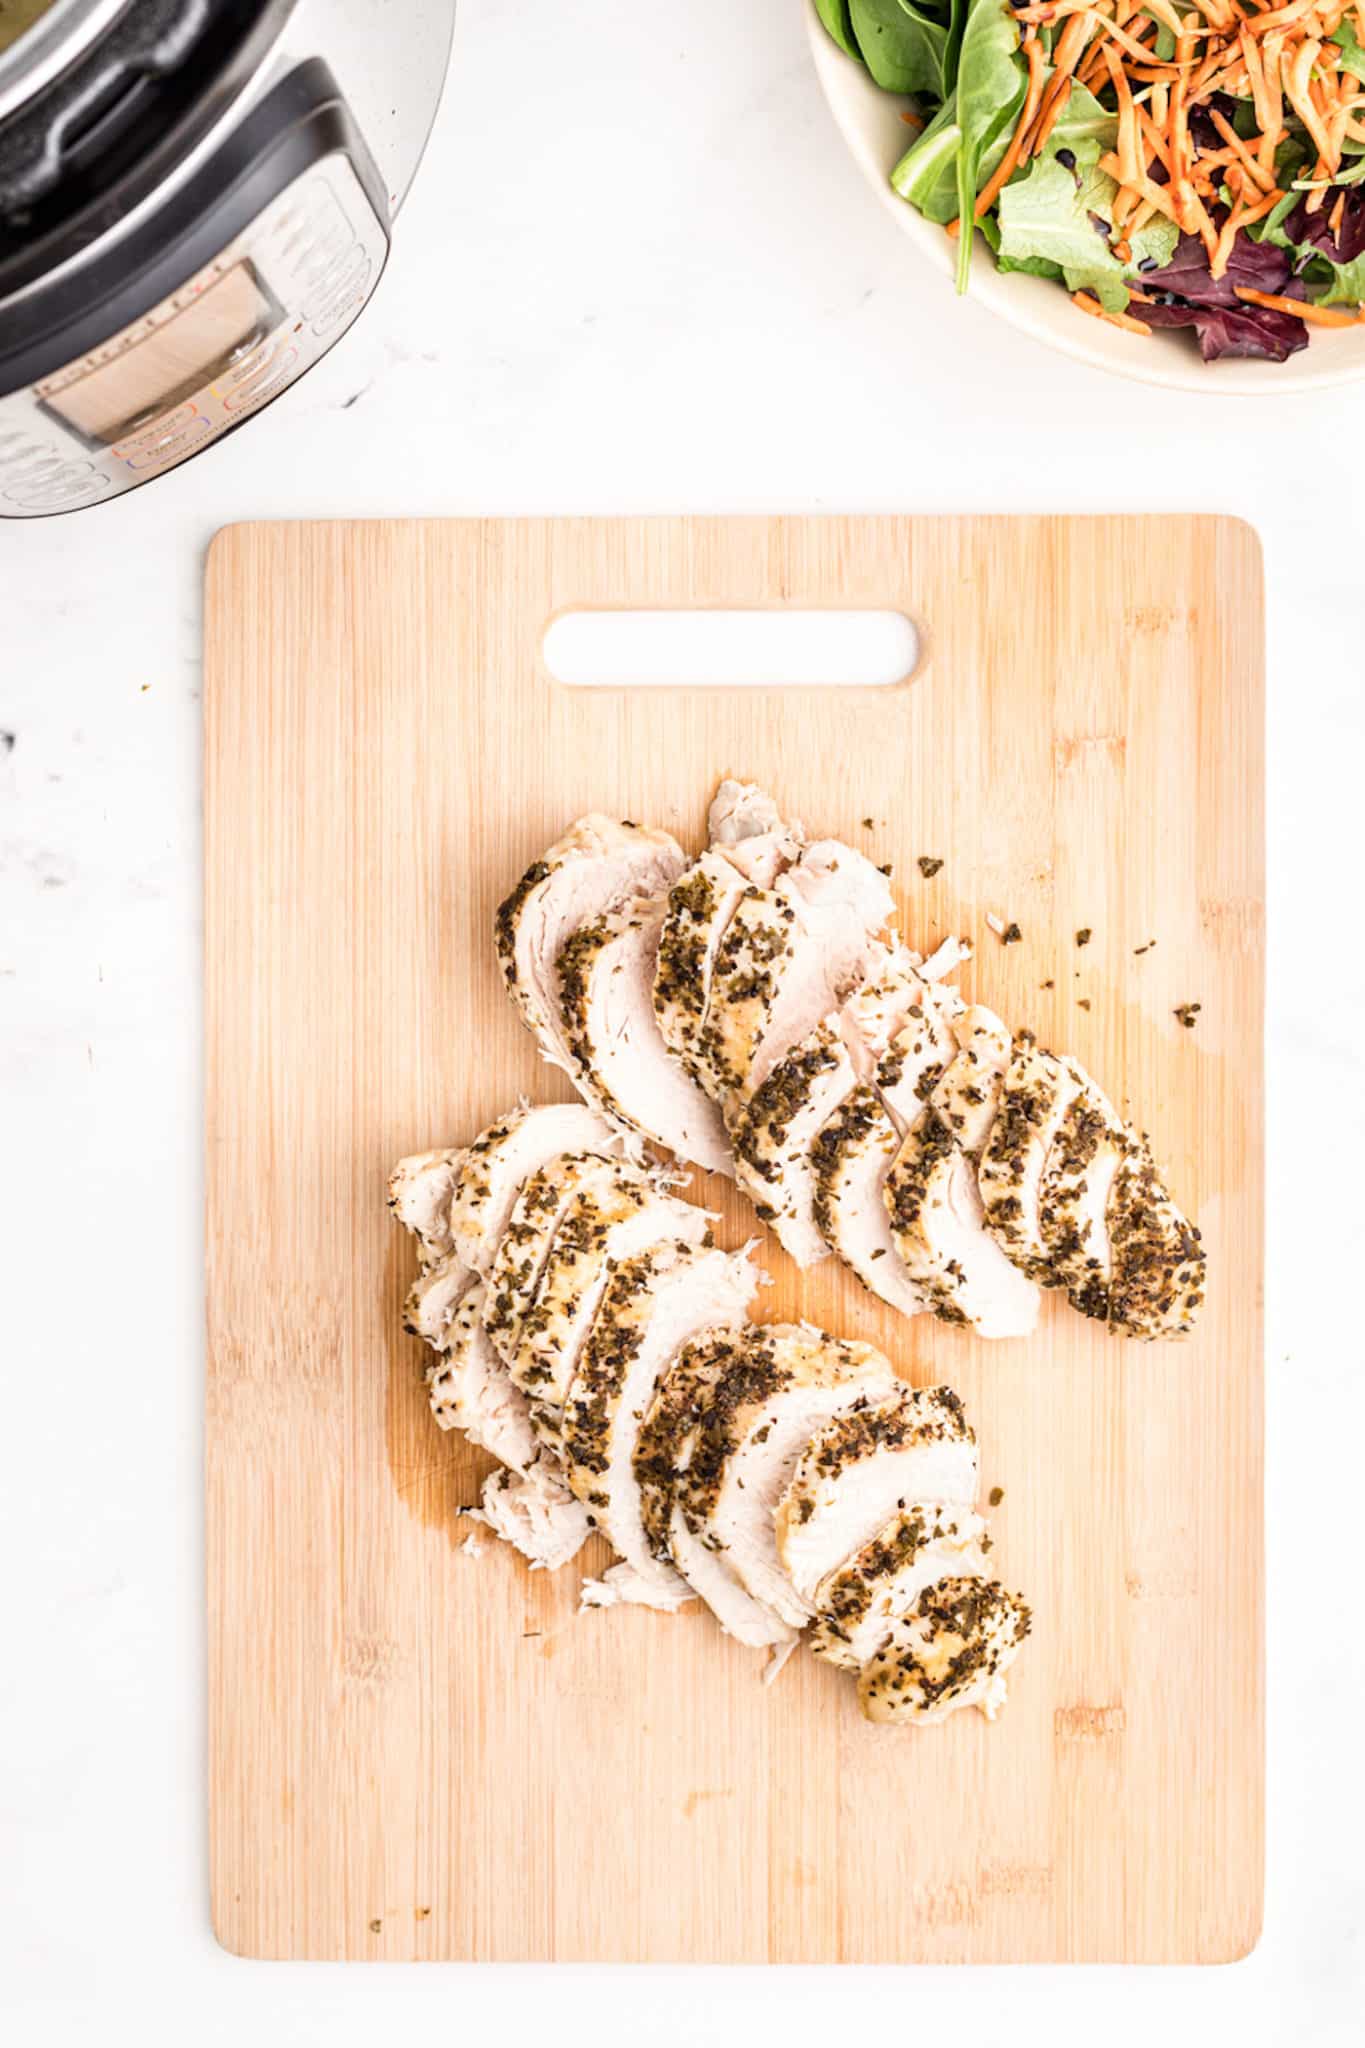 Sliced turkey tenderloin on a wooden cutting board.